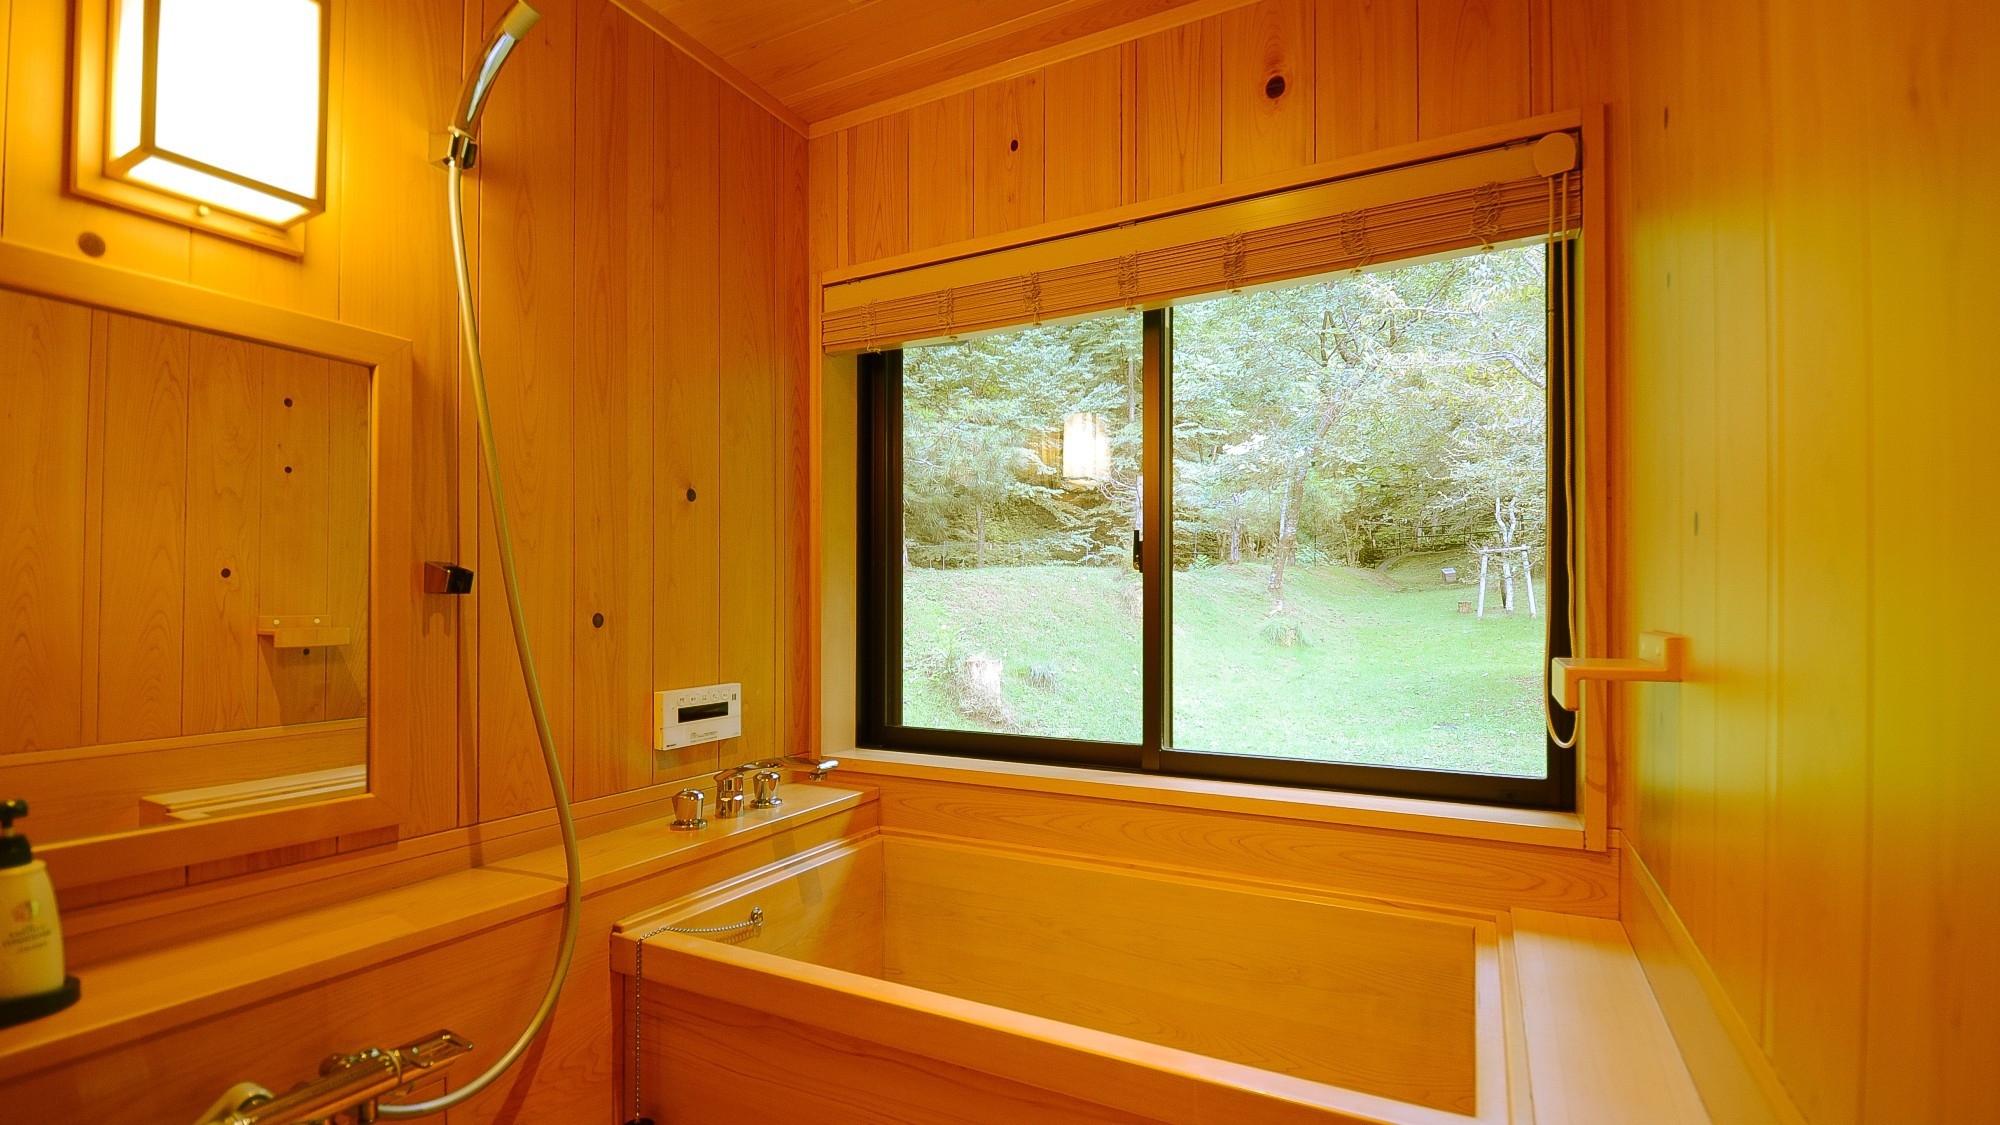 【檜風呂付き特別室】1日1室限定◆離れにある檜風呂付き特別客室で過ごす優雅な一時